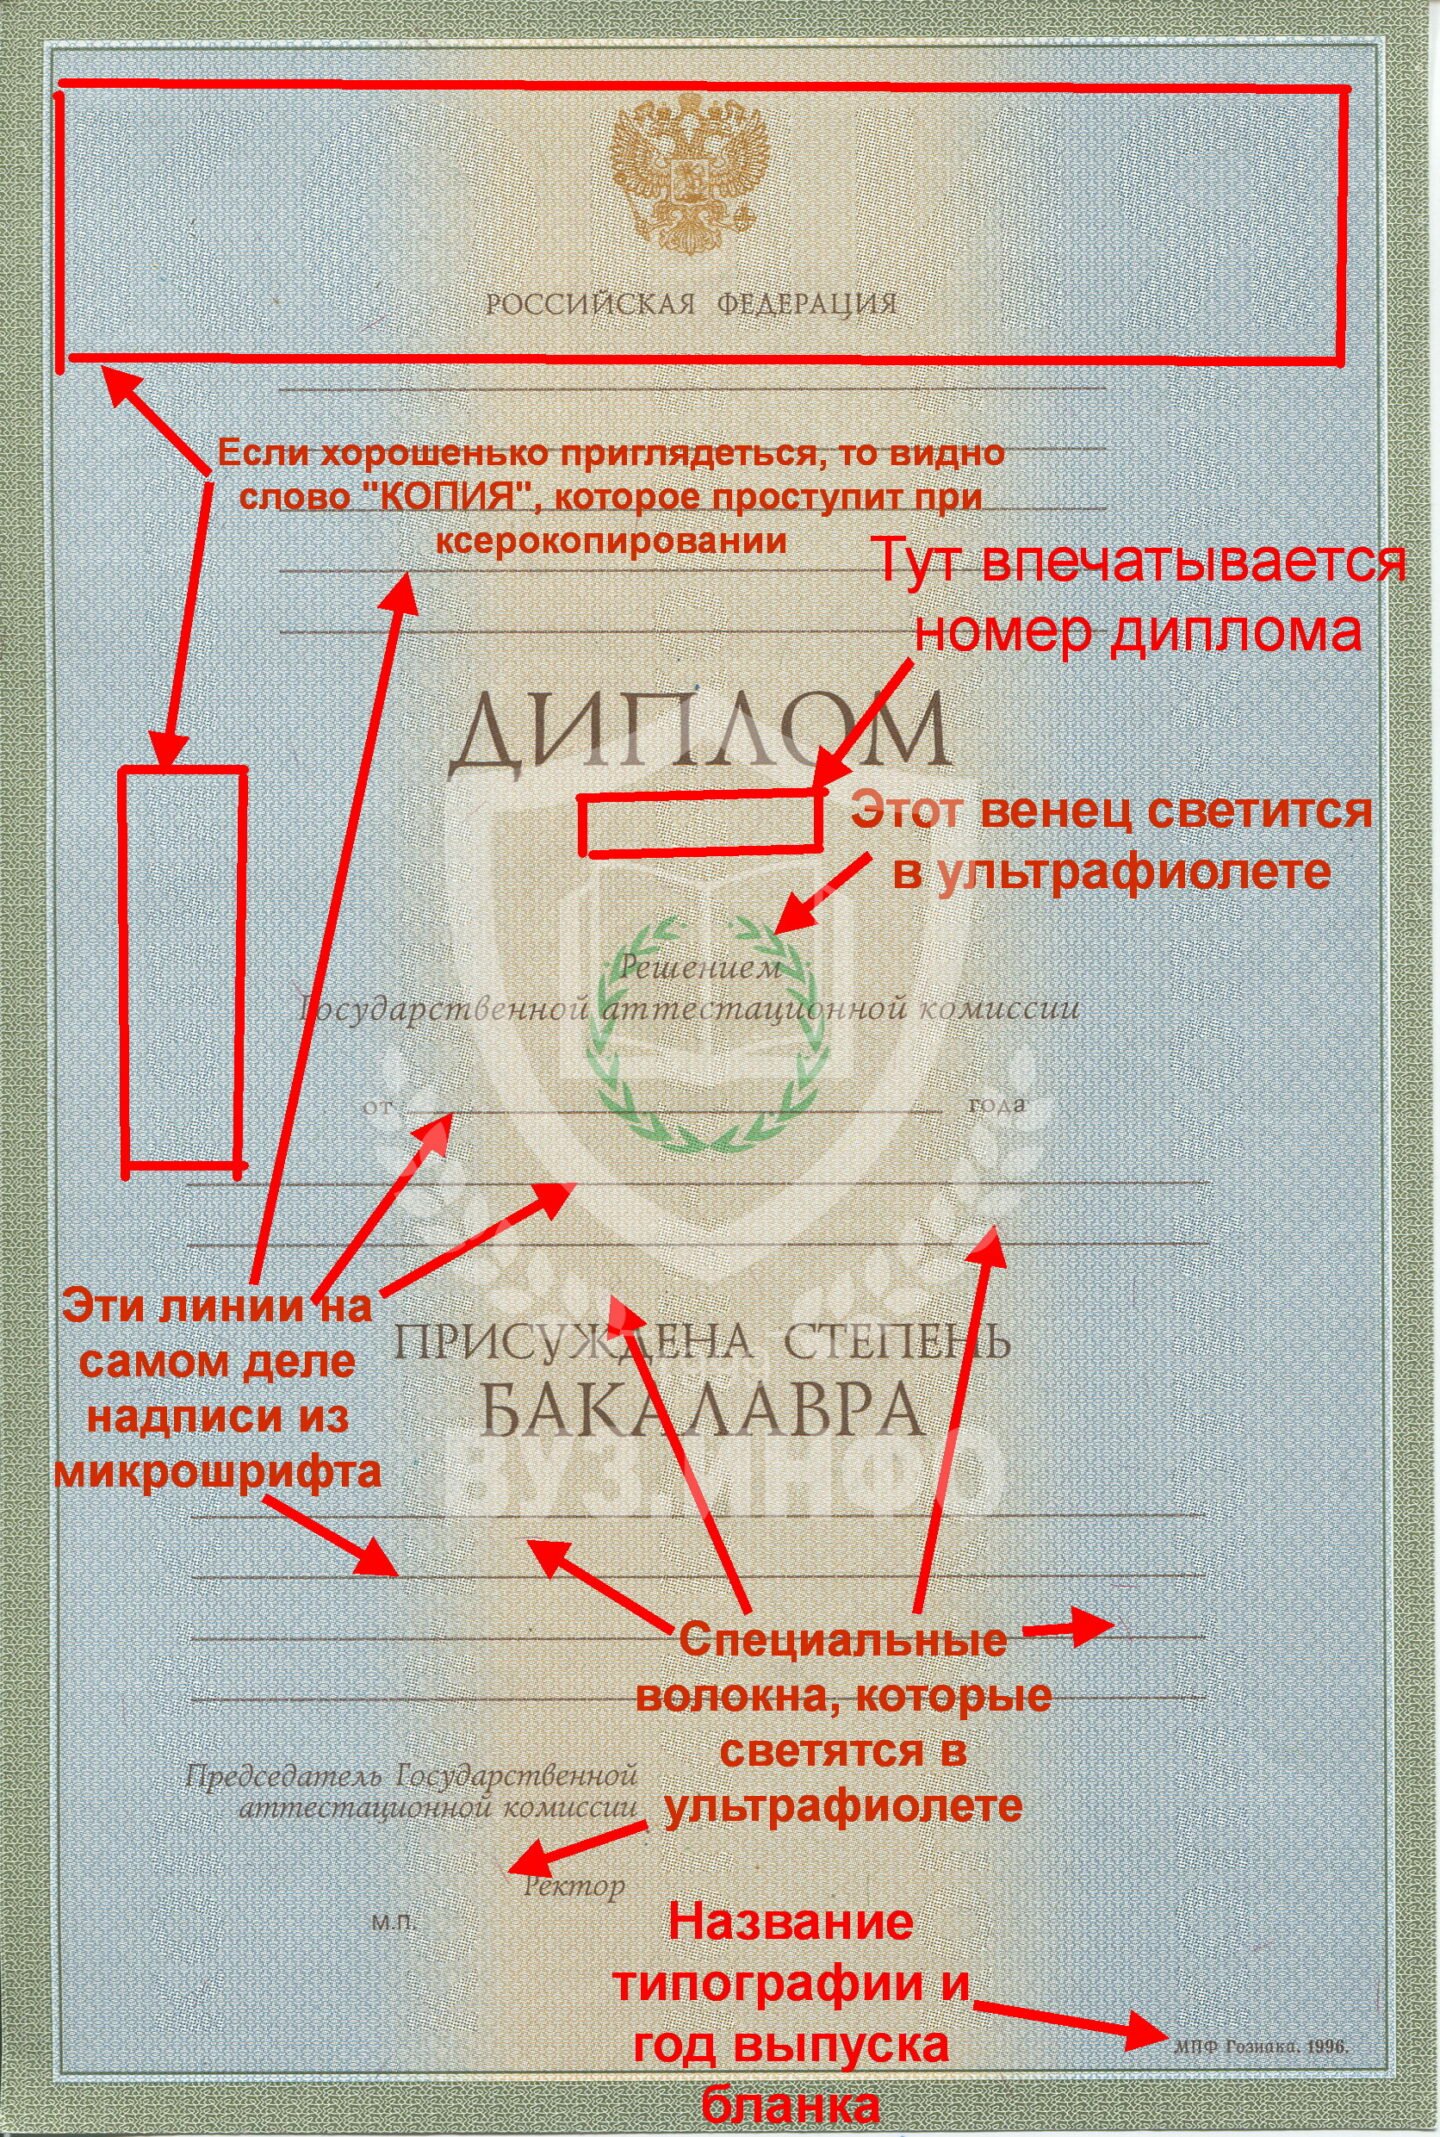 Степени защиты диплома бакалавра 1996-2002 гг.